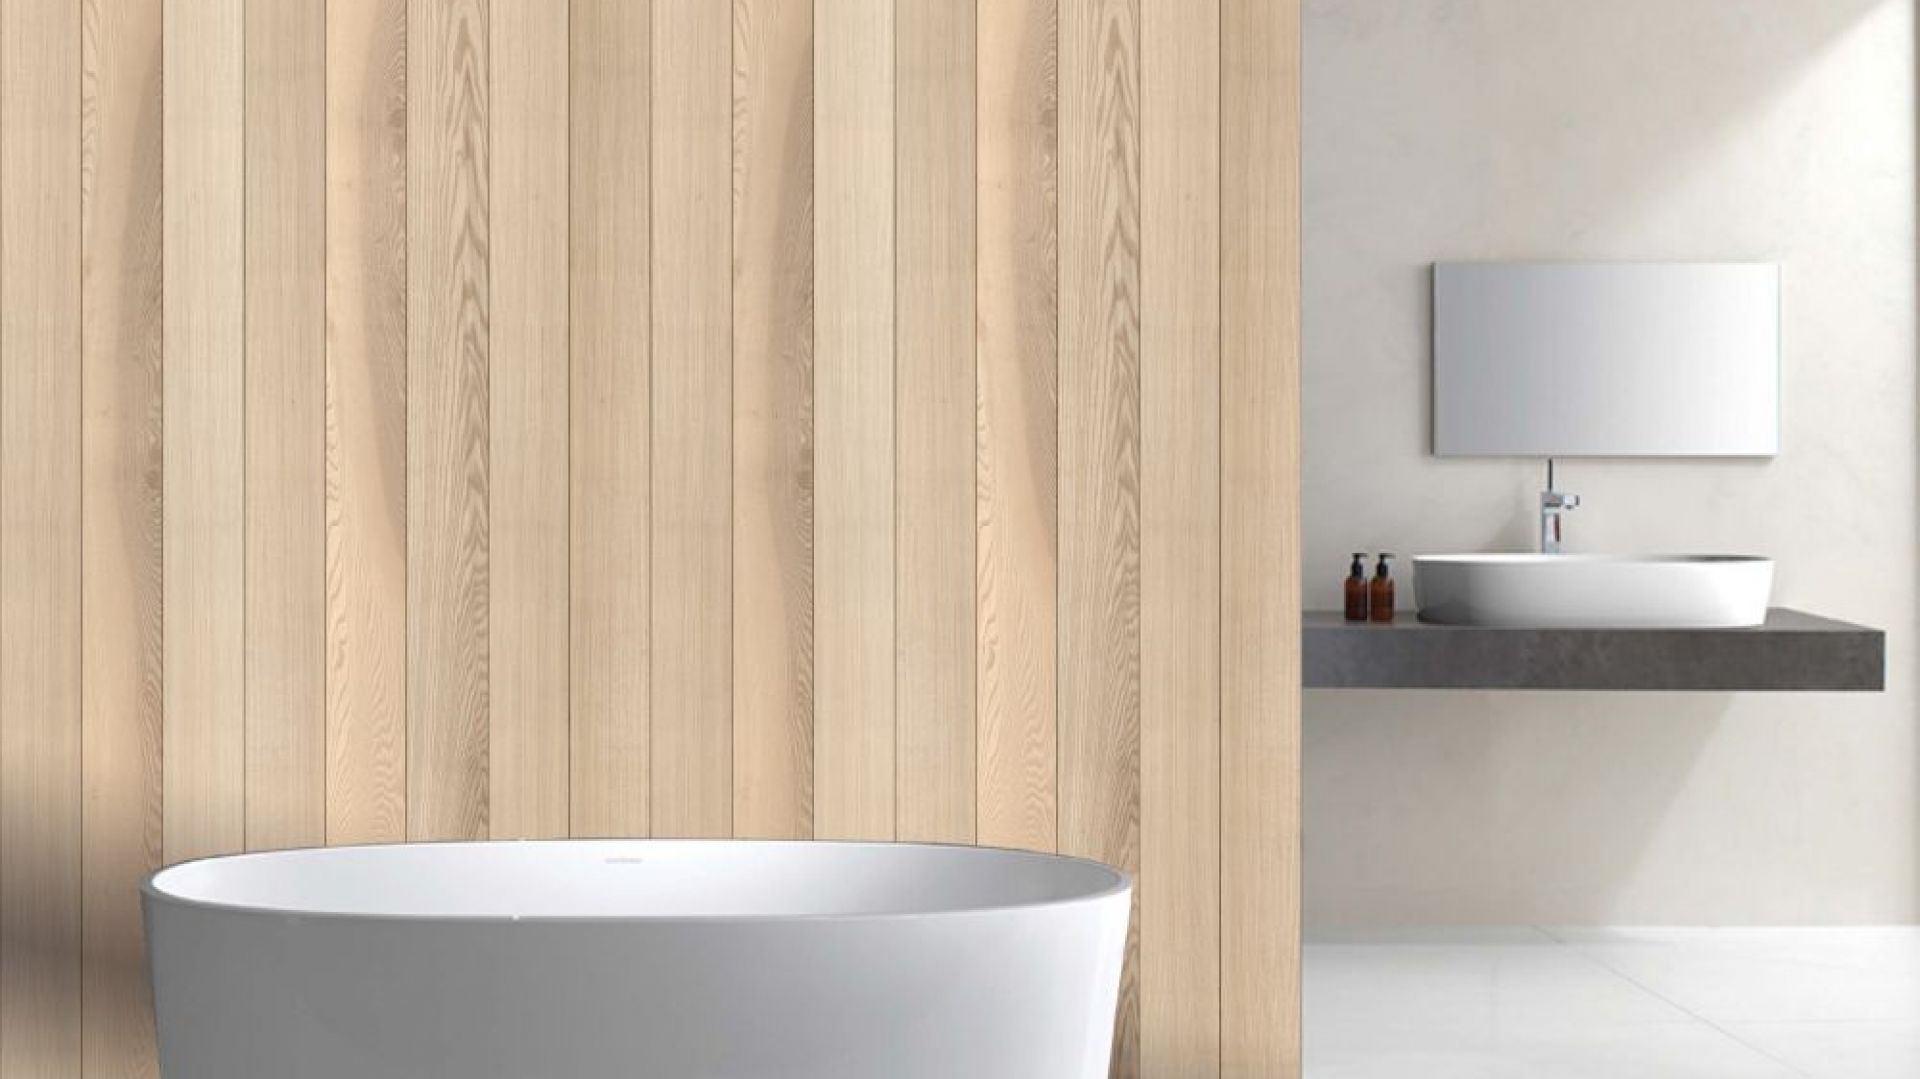 Ściana w łazience: dekoracyjne panele jak drewno